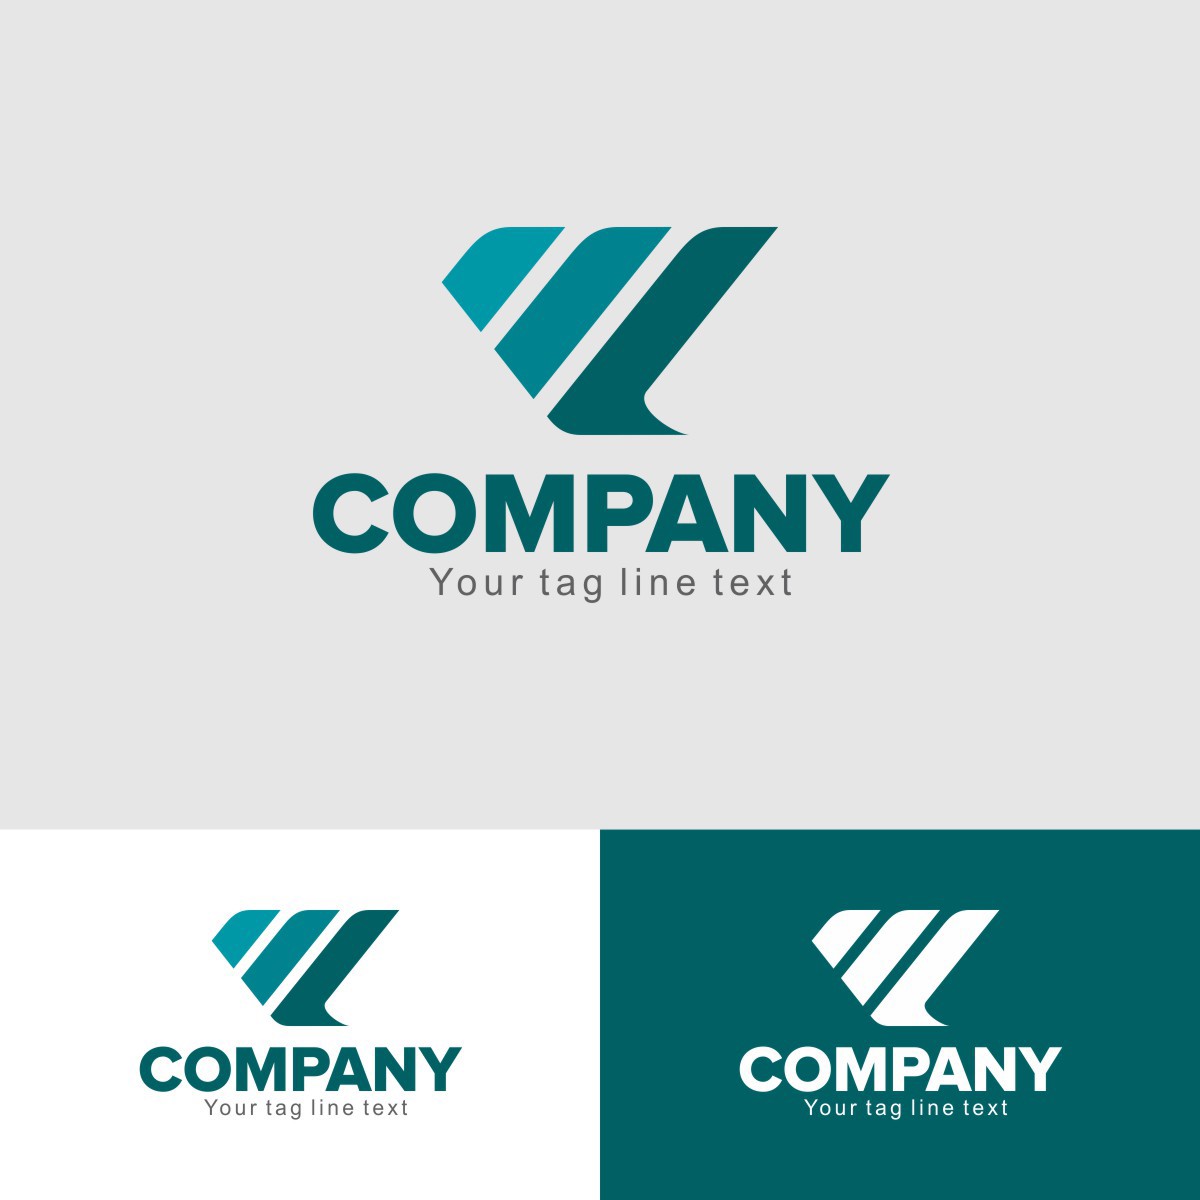 logo freepik vector corporate modern